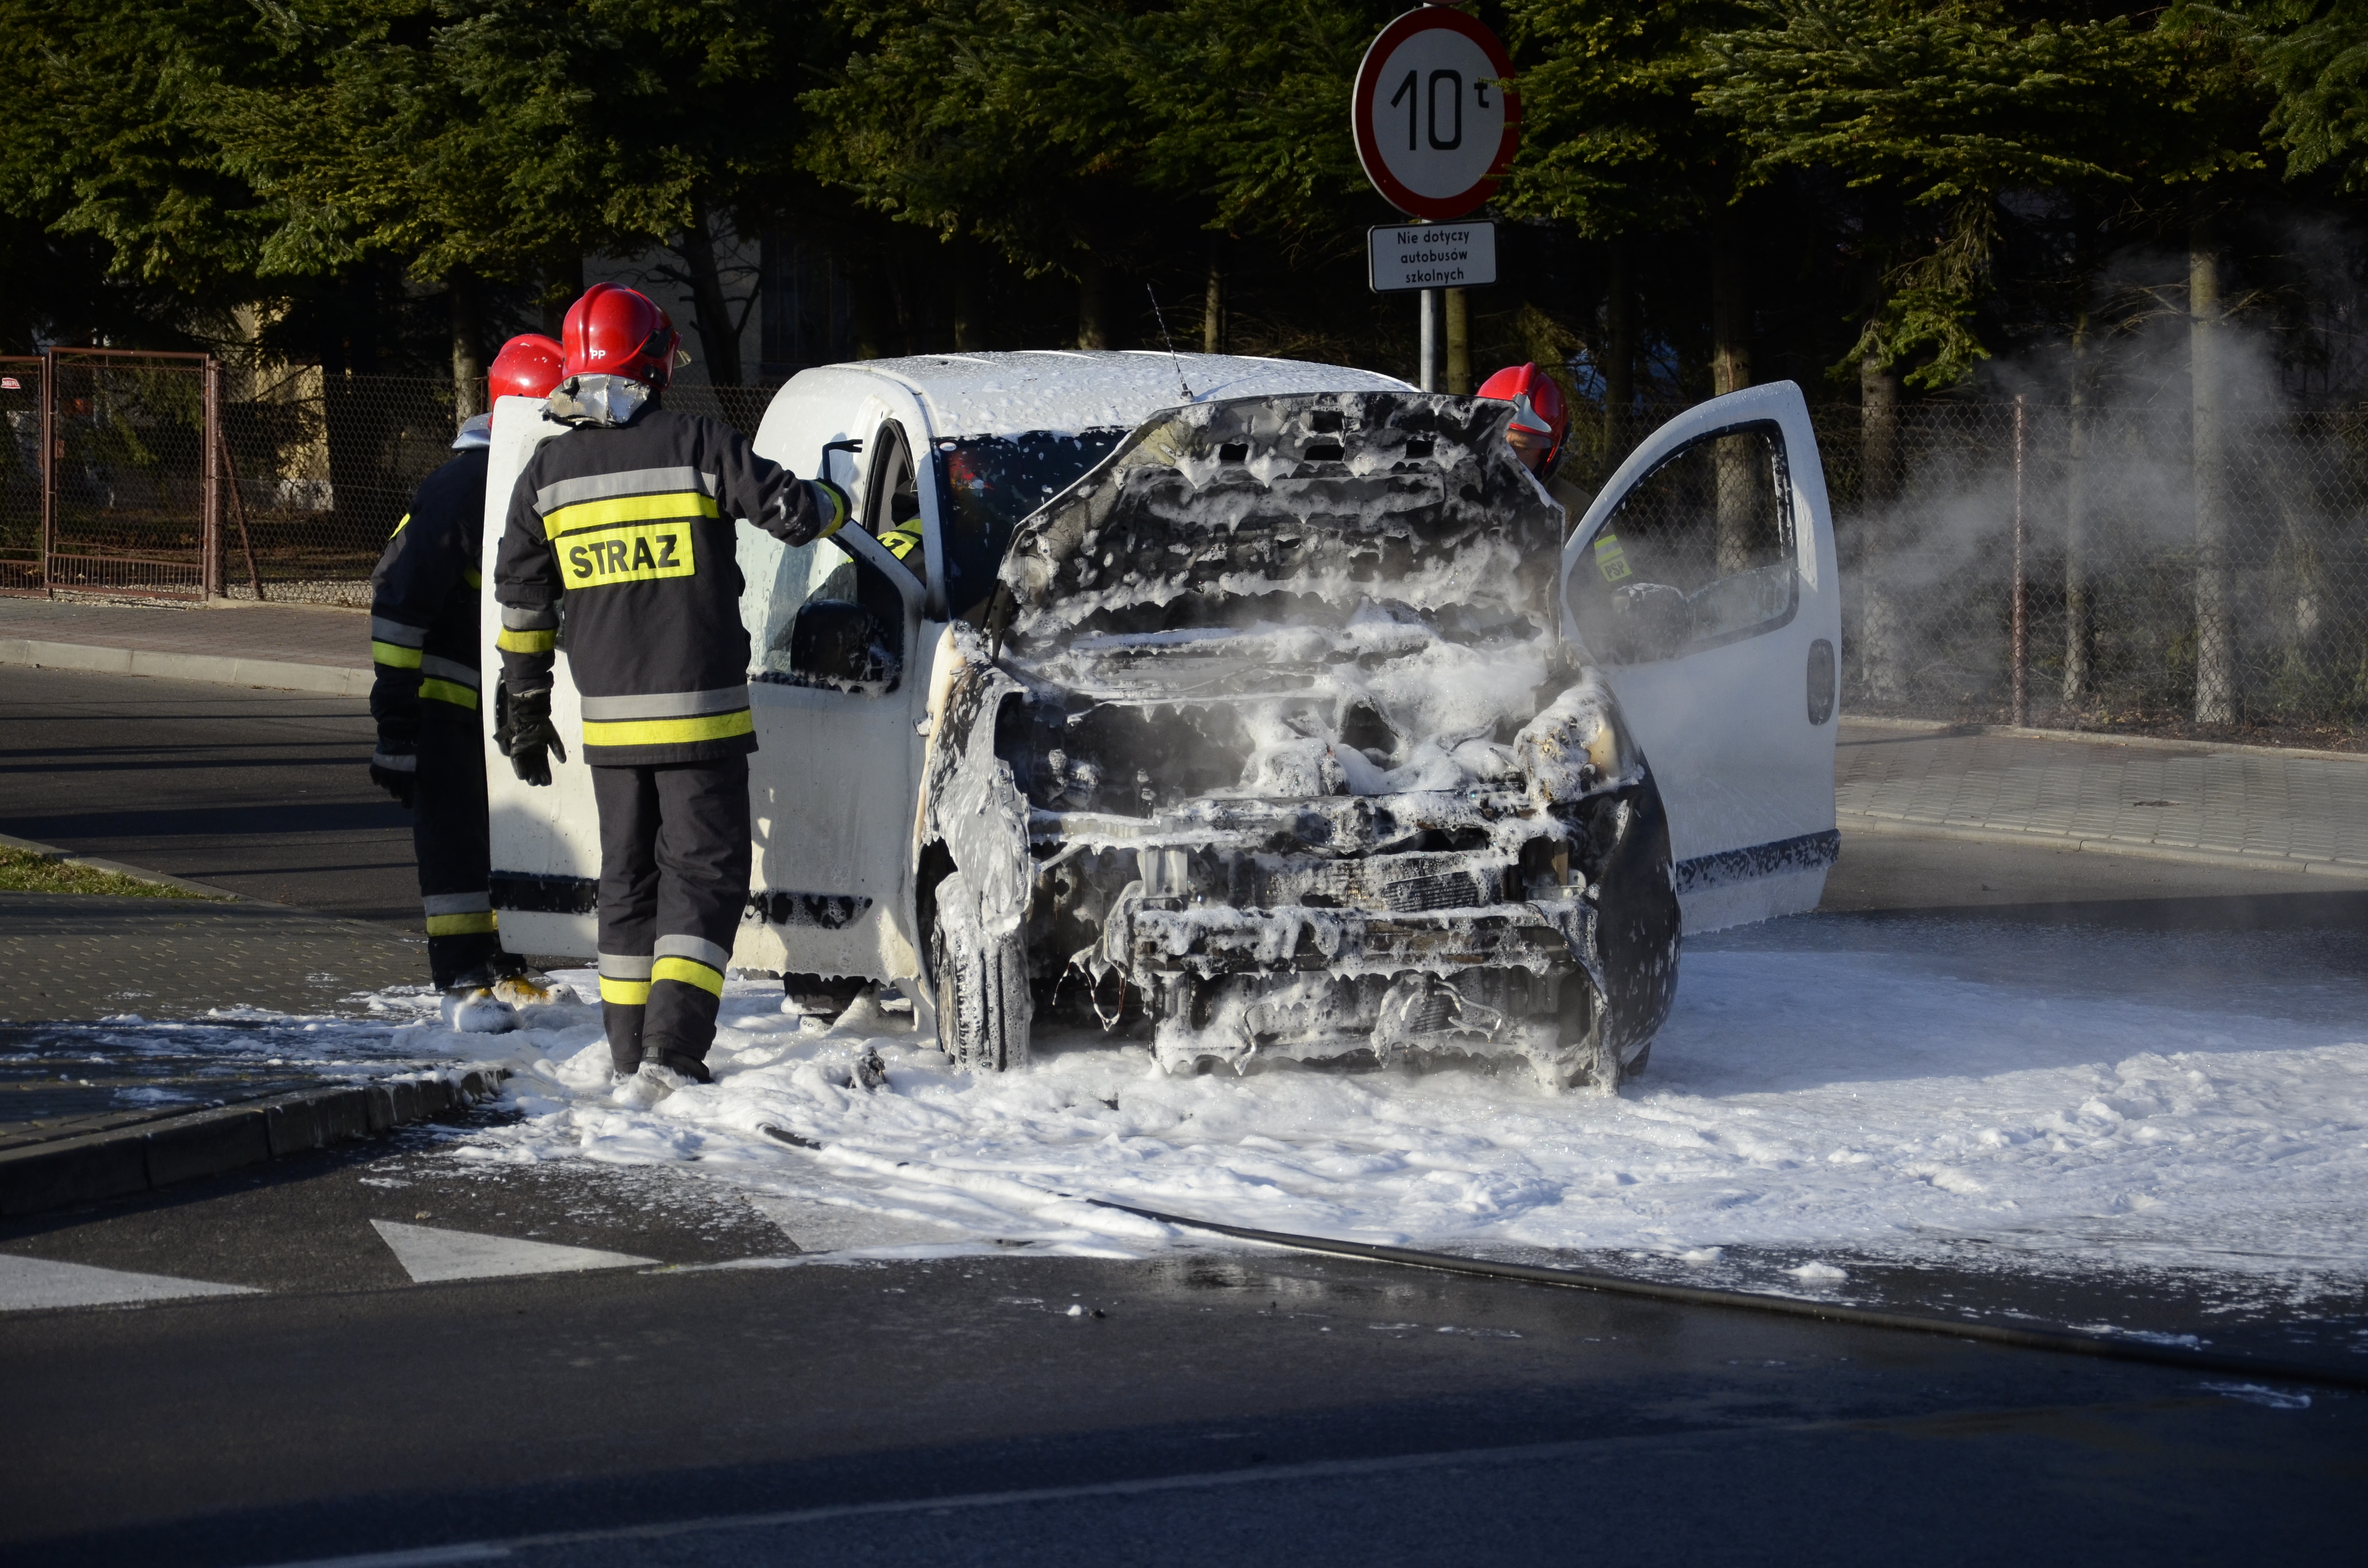 Płonął samochód na jednej z ulic w Kolbuszowej |ZDJĘCIA| - Zdjęcie główne